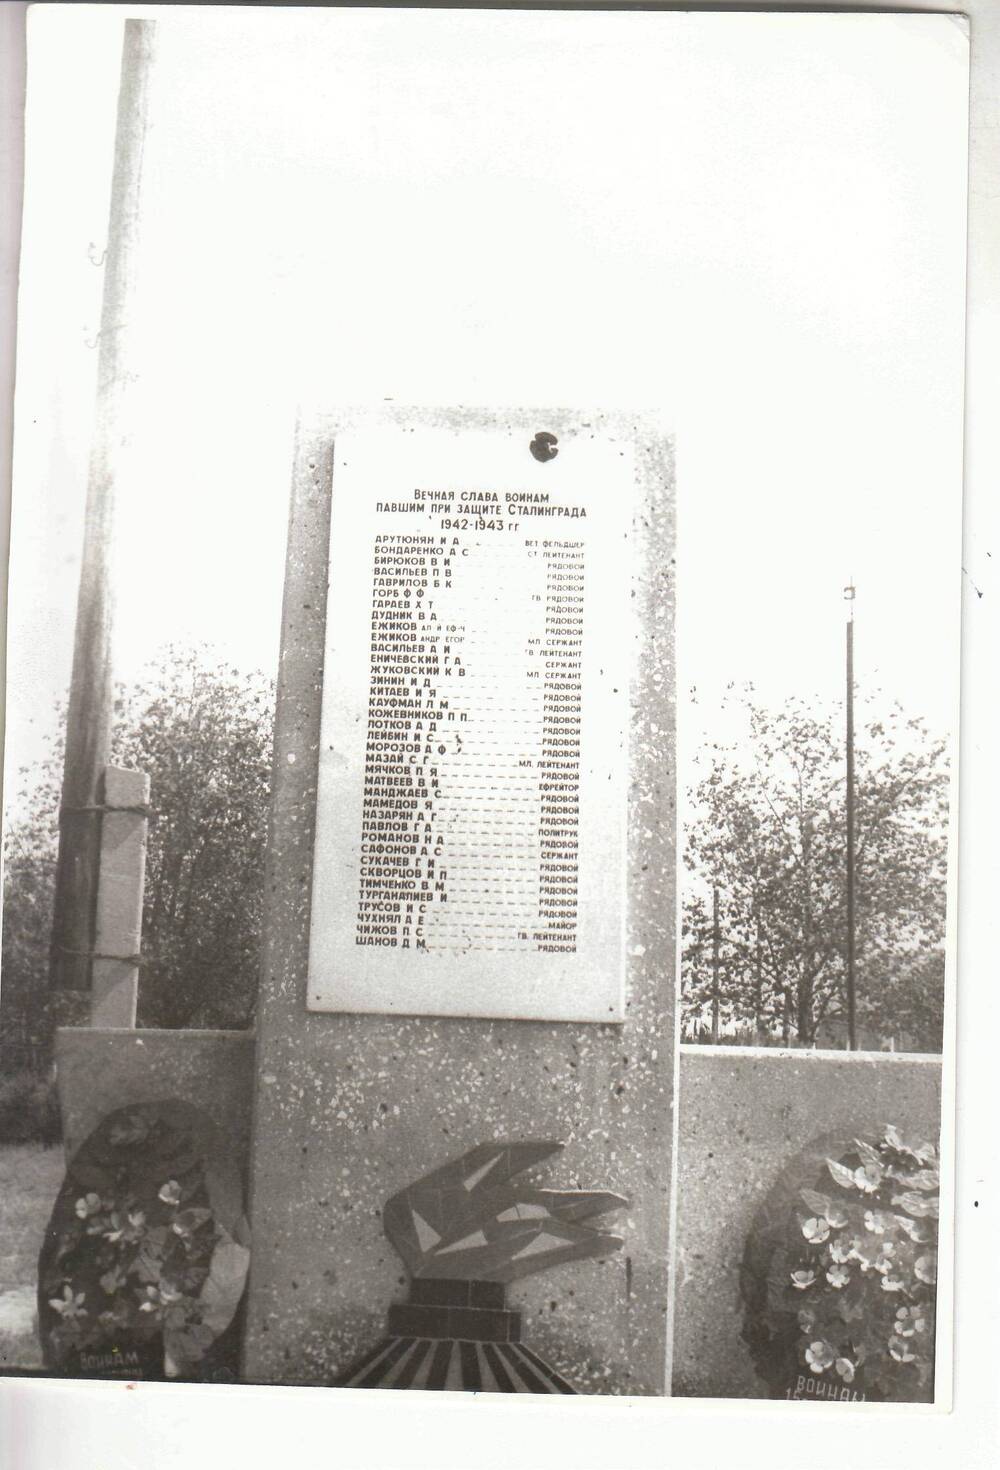 Фото ч/б, глянцевое. Стела с именами воинов, павших при защите Сталинграда 1942-43гг. в Дубовом Овраге.